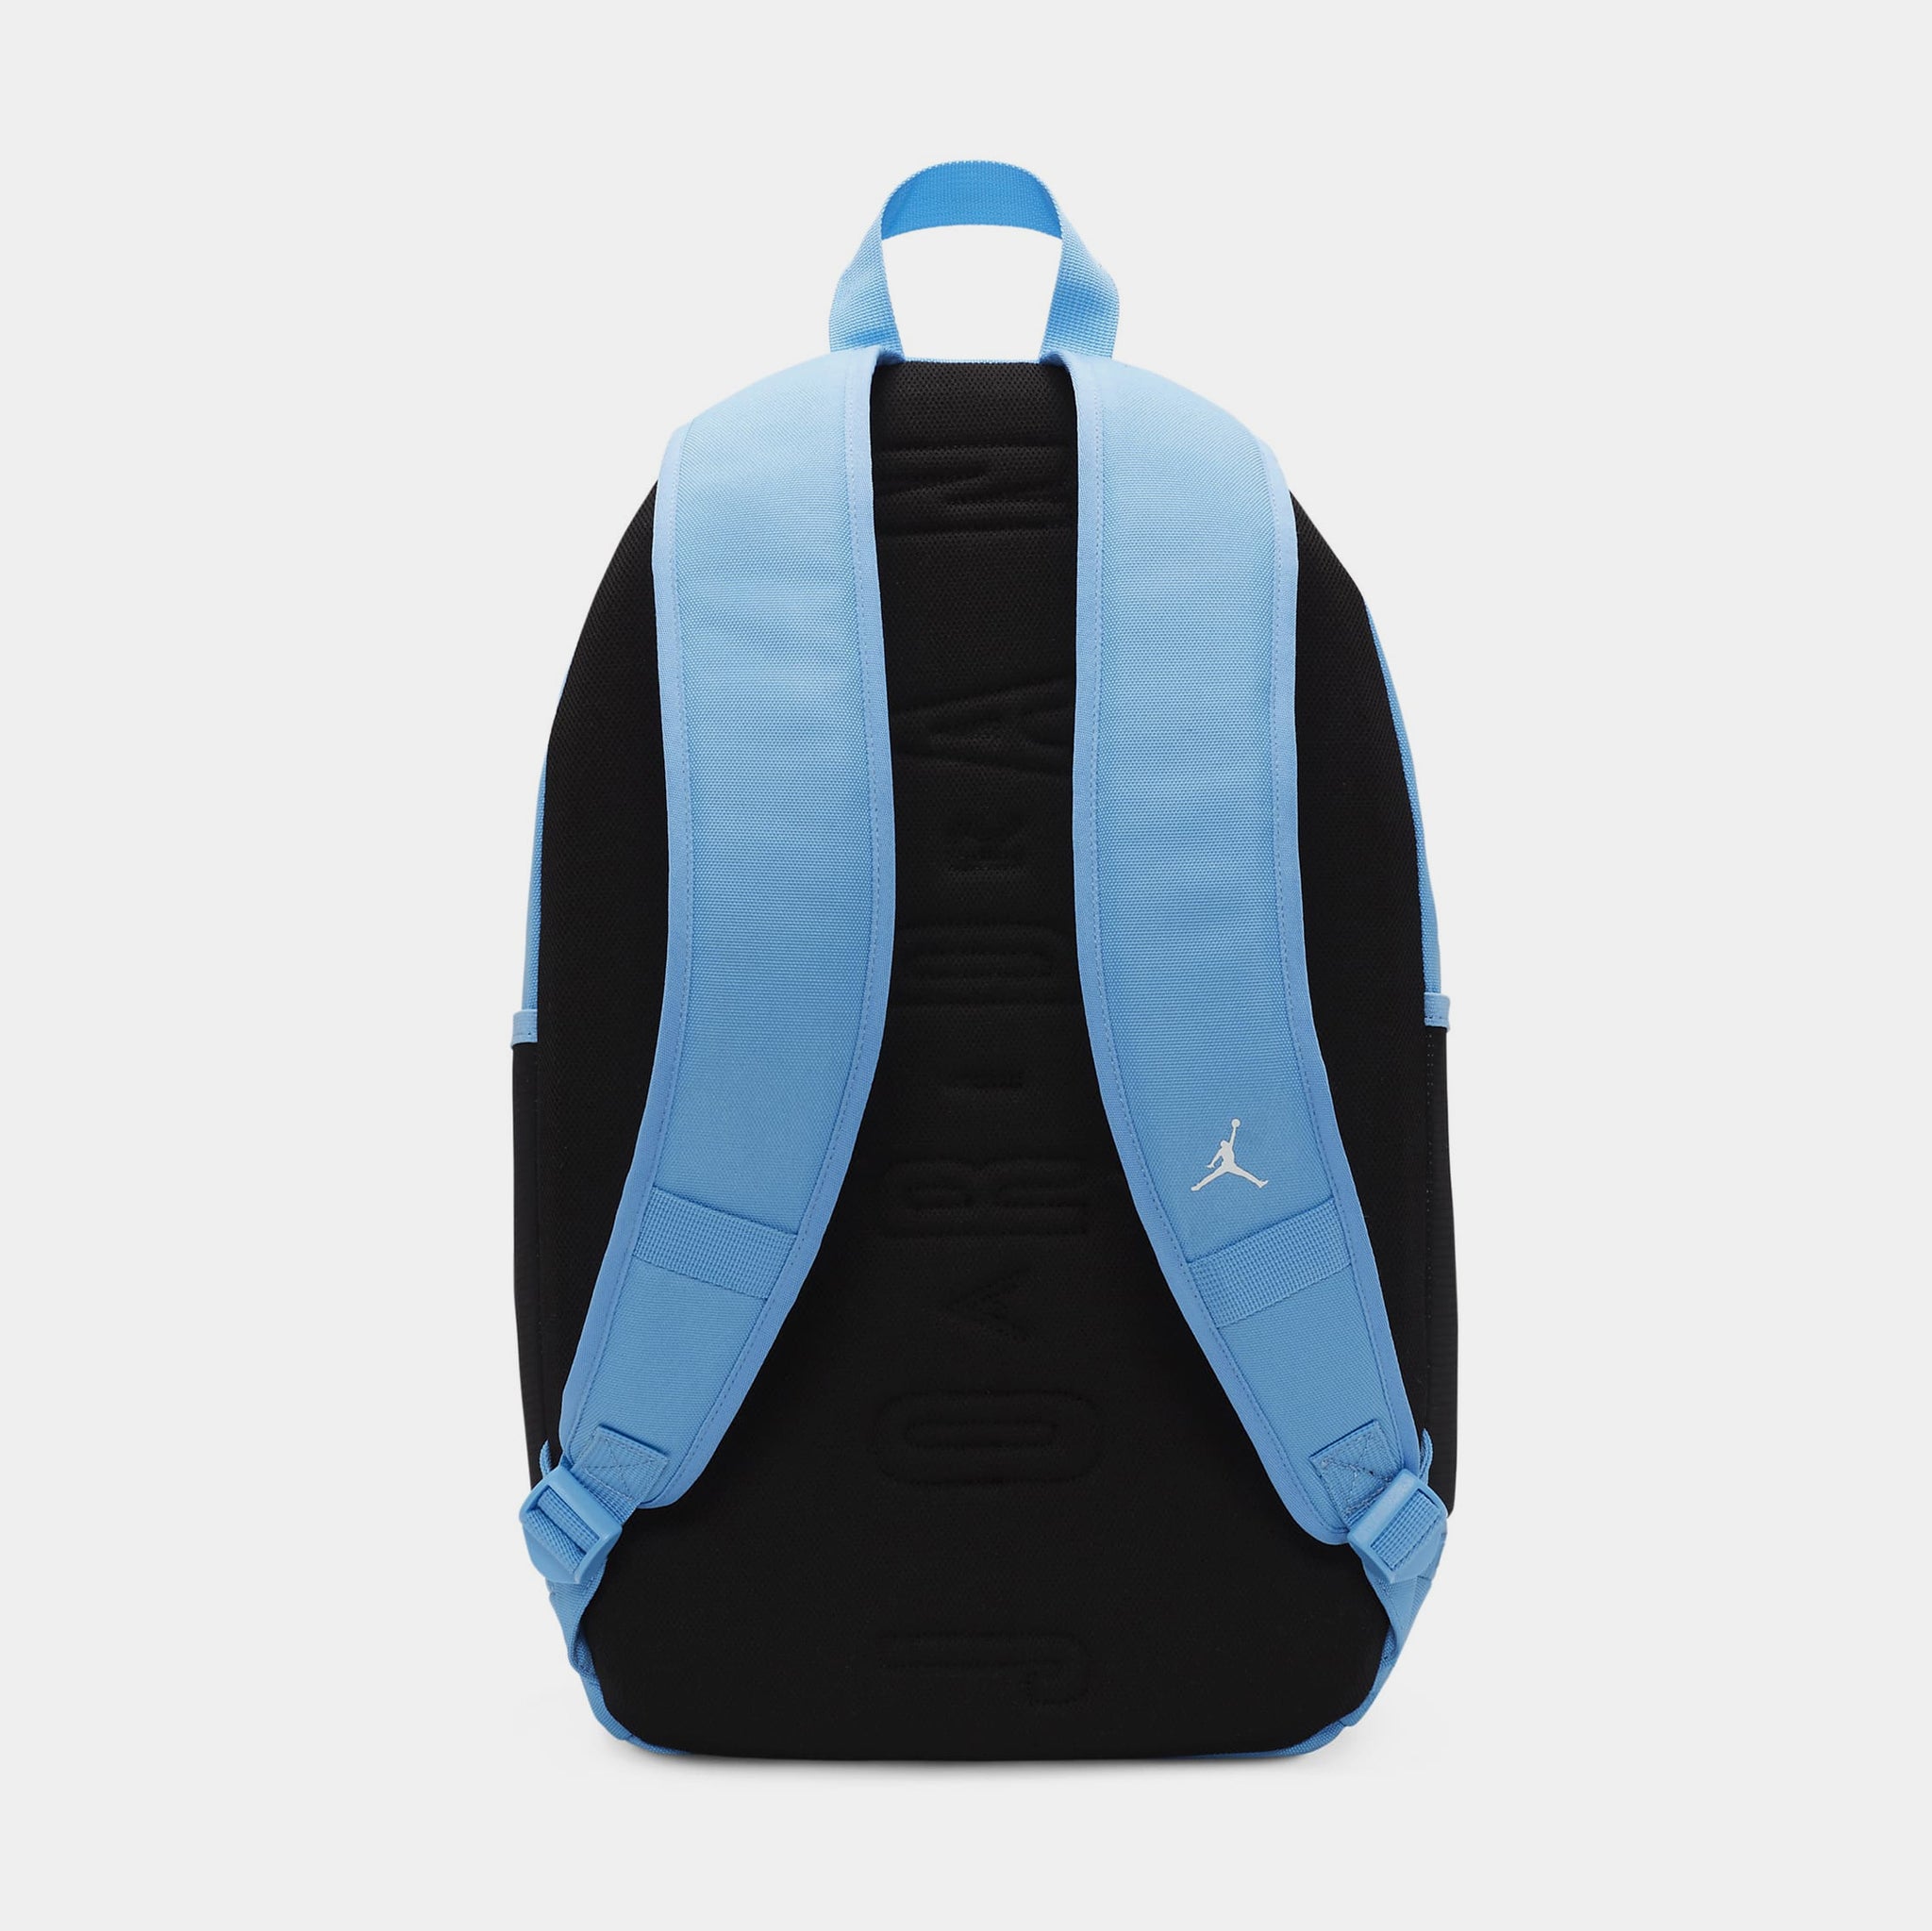 Jordan Jersey Grade School Backpack (Blue)